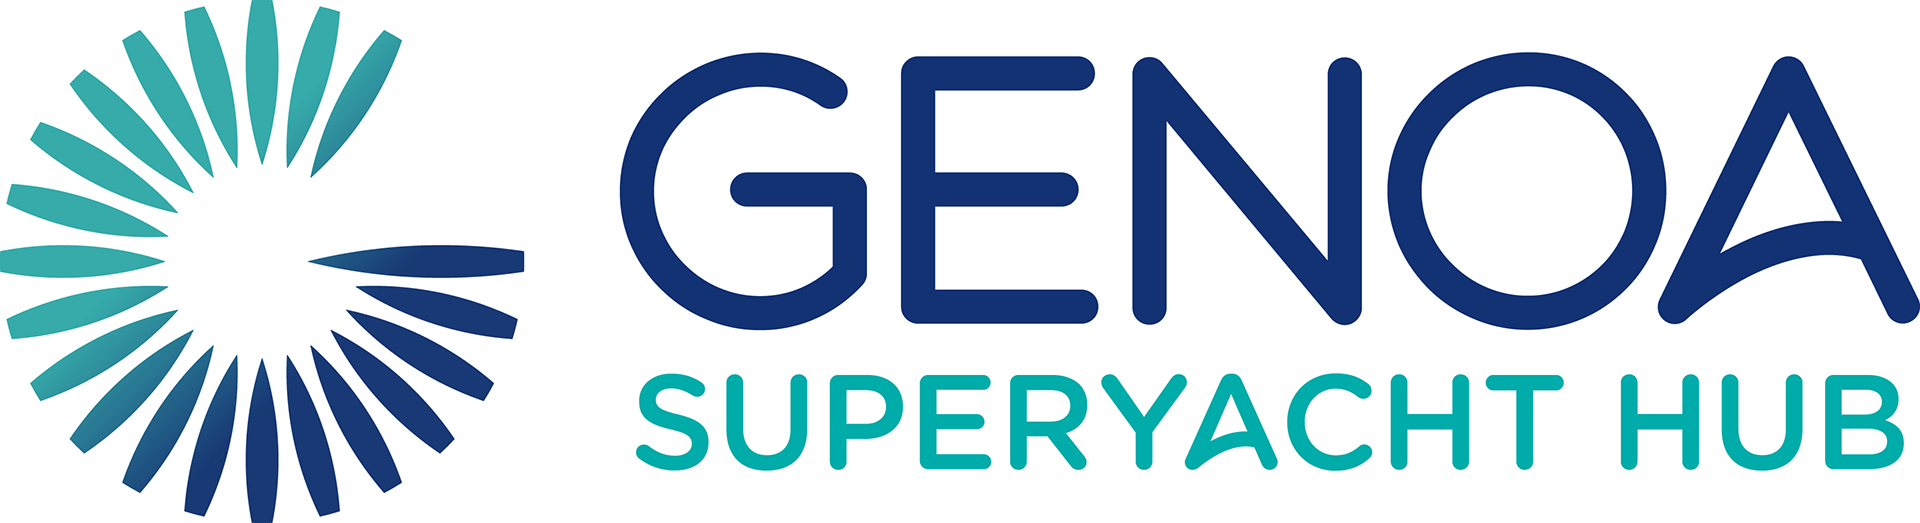 Genoa Superyacht Hub logo